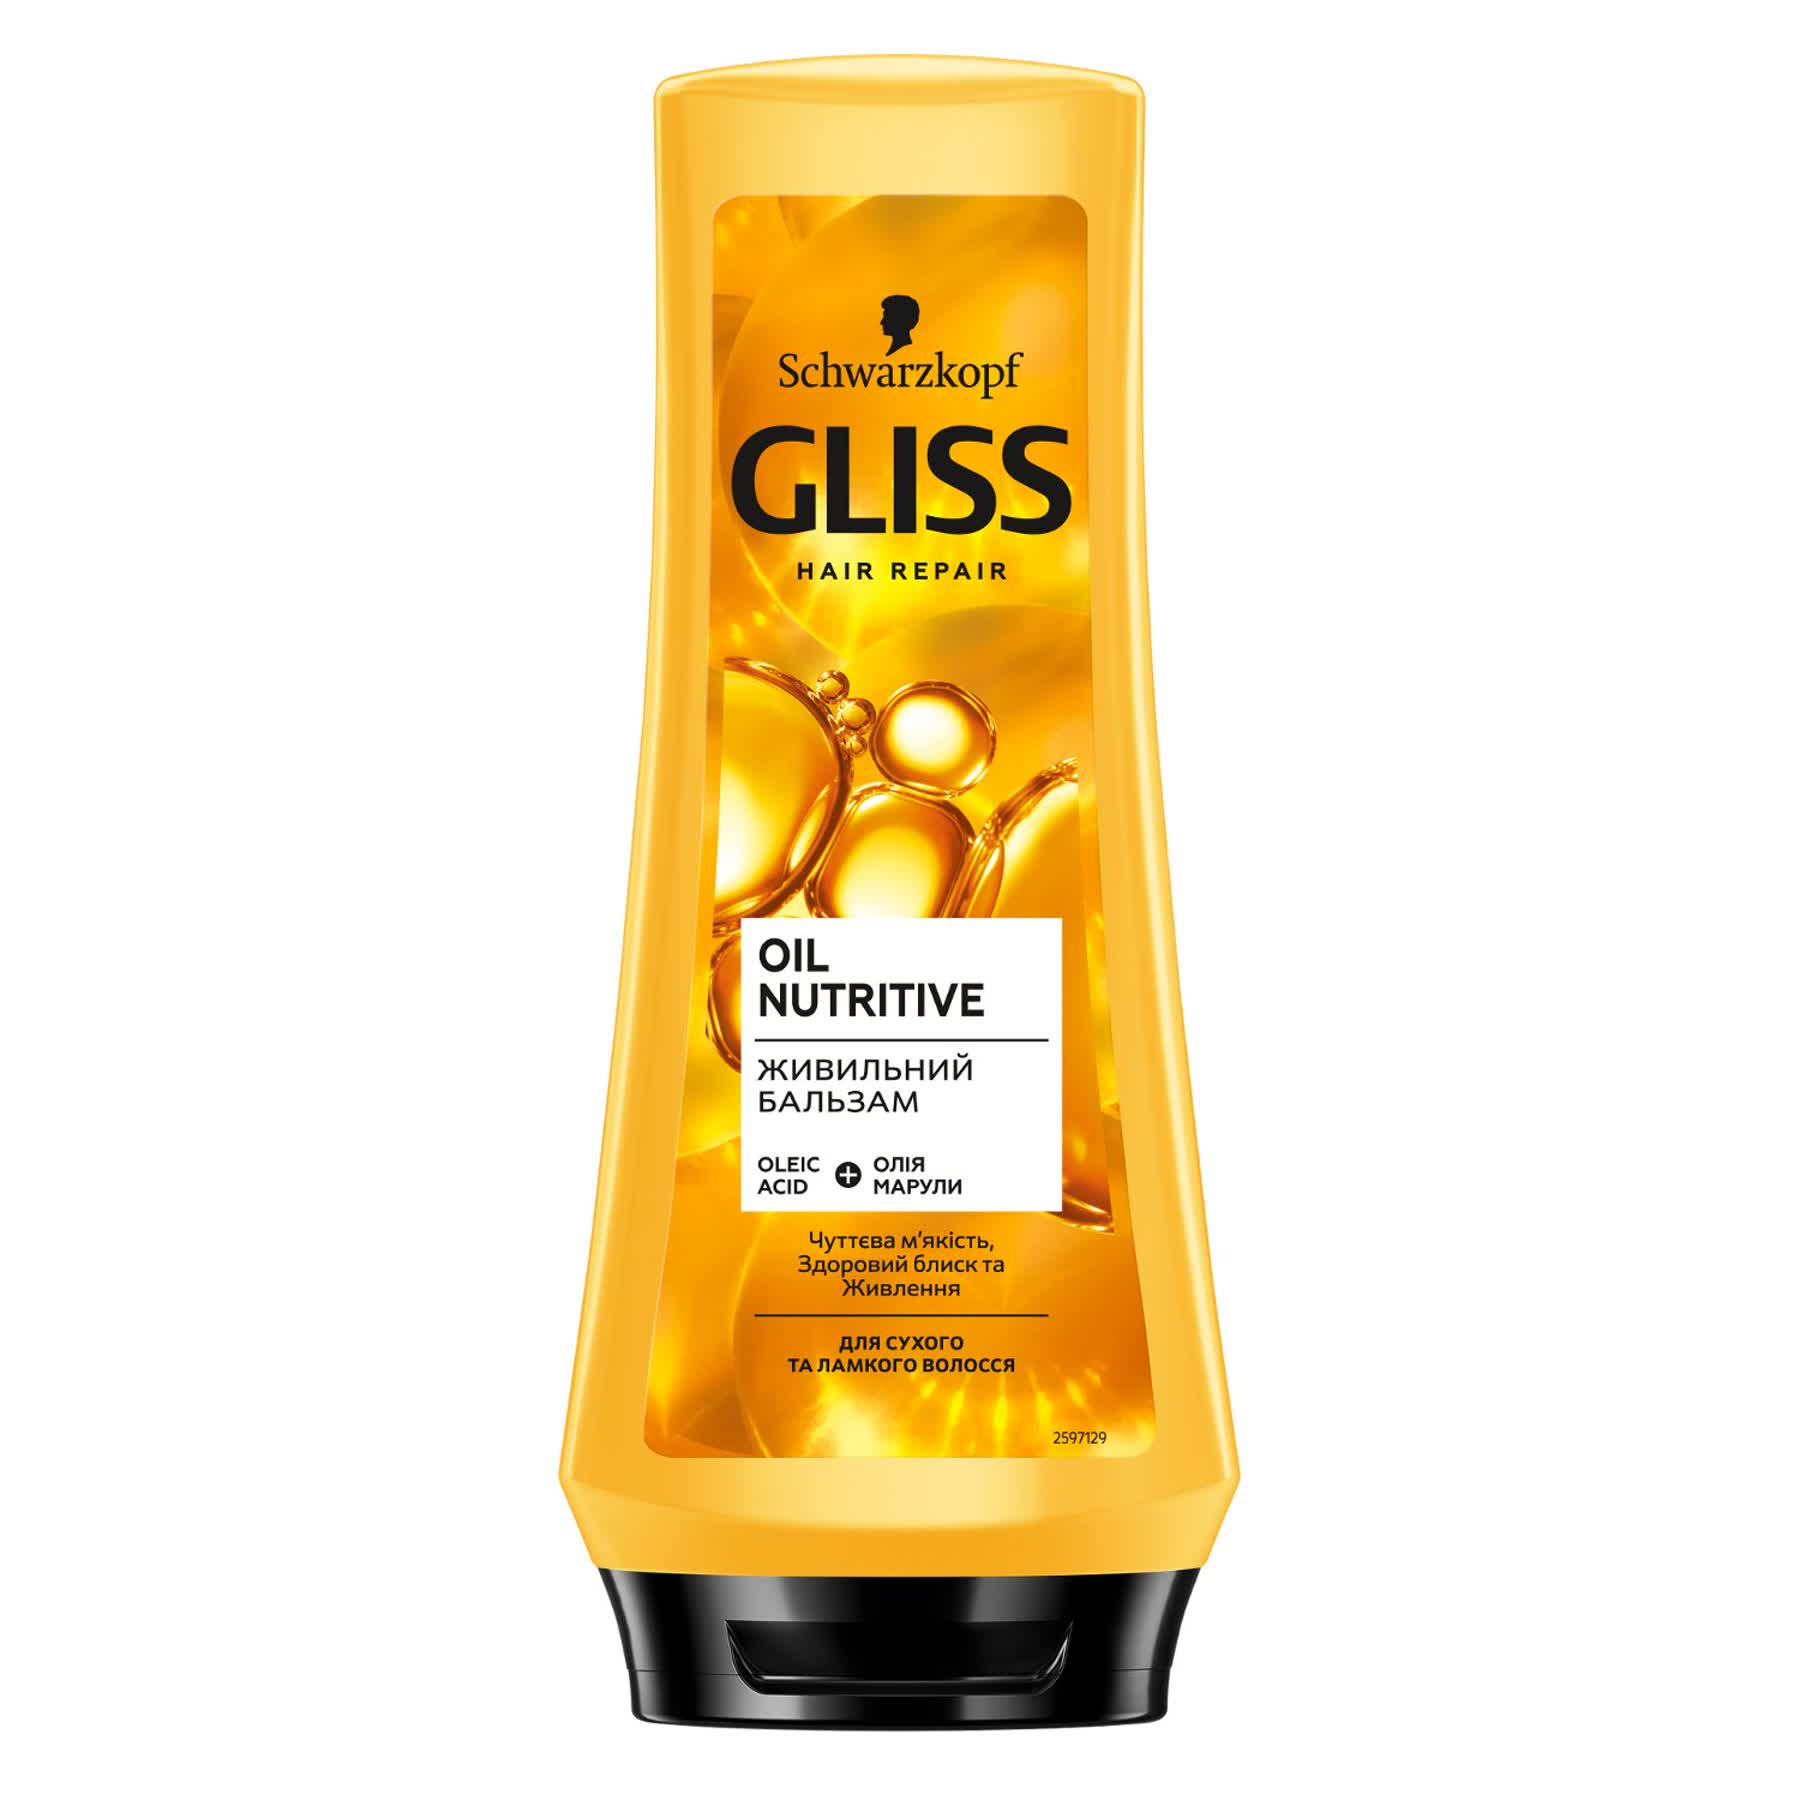 Бальзам Gliss Oil Nutritive для волосся, що січеться, 200 мл - фото 1